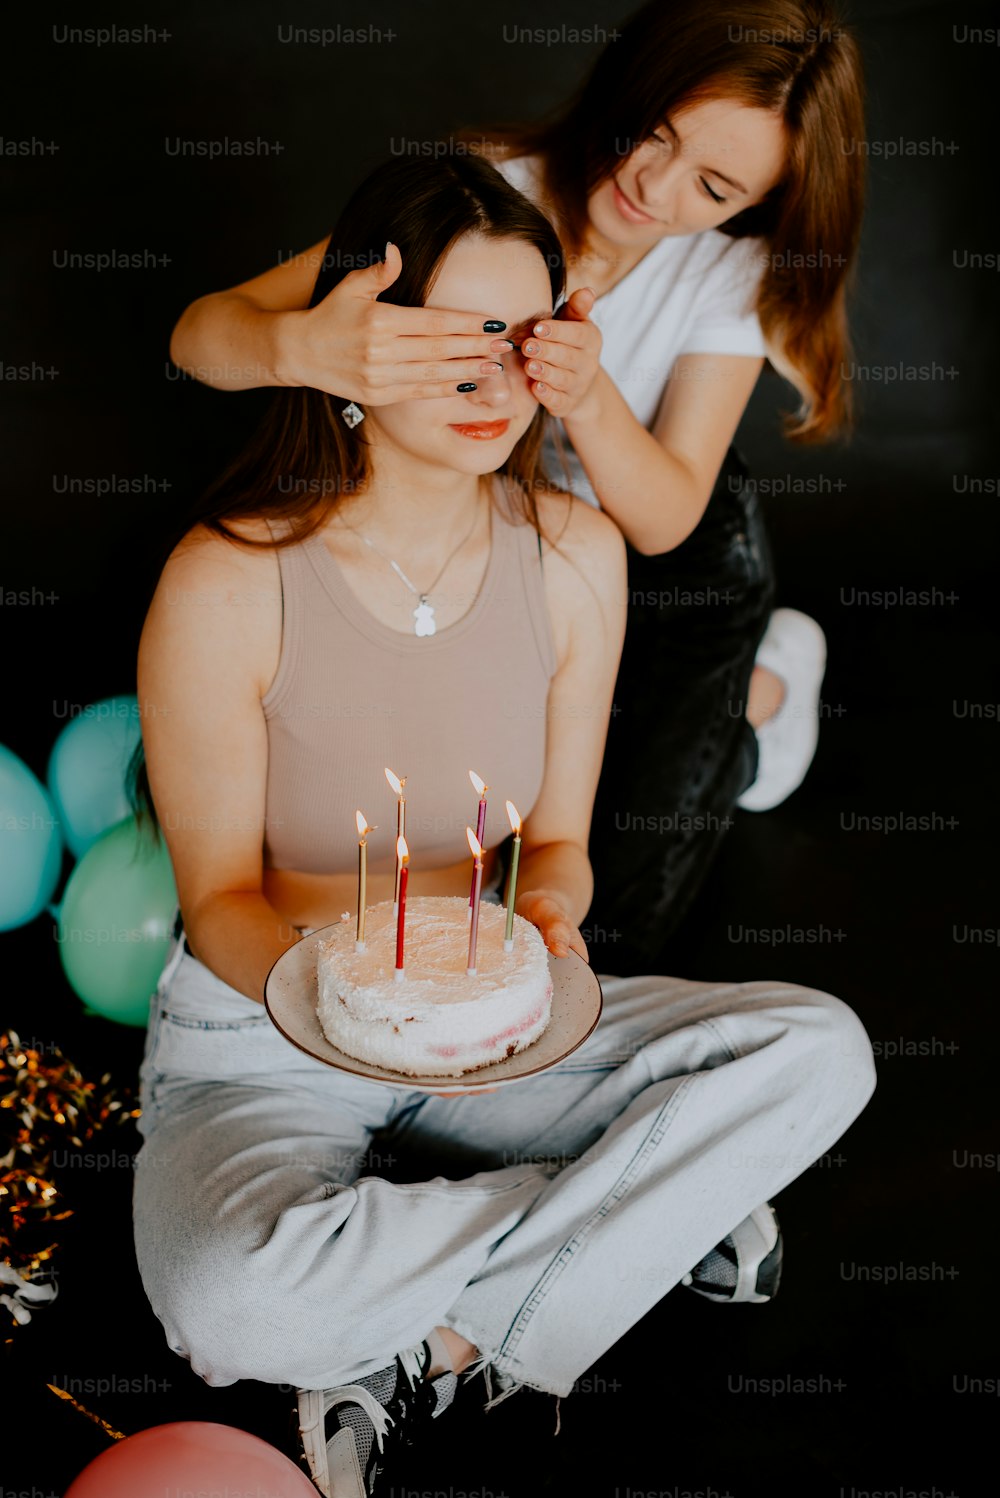 Una mujer sentada frente a un pastel con velas